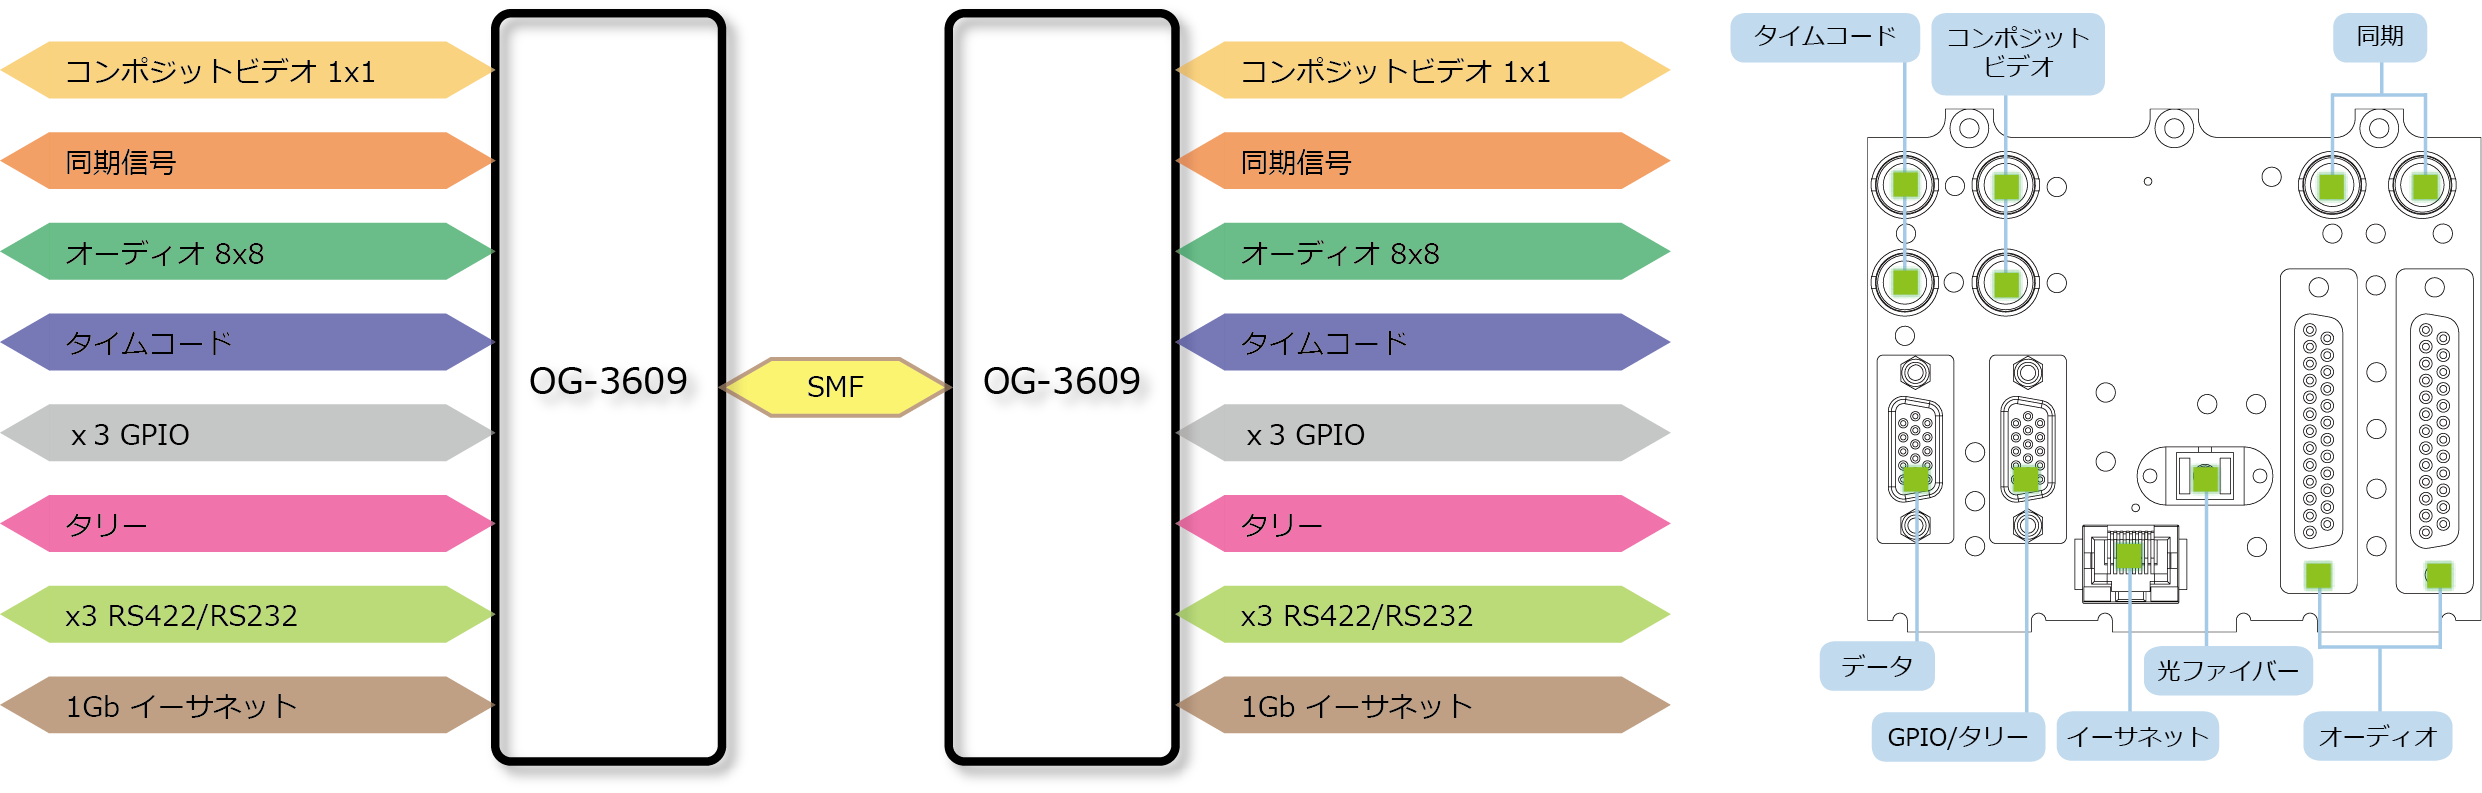 OG-3609 ブロック図/リアパネル図